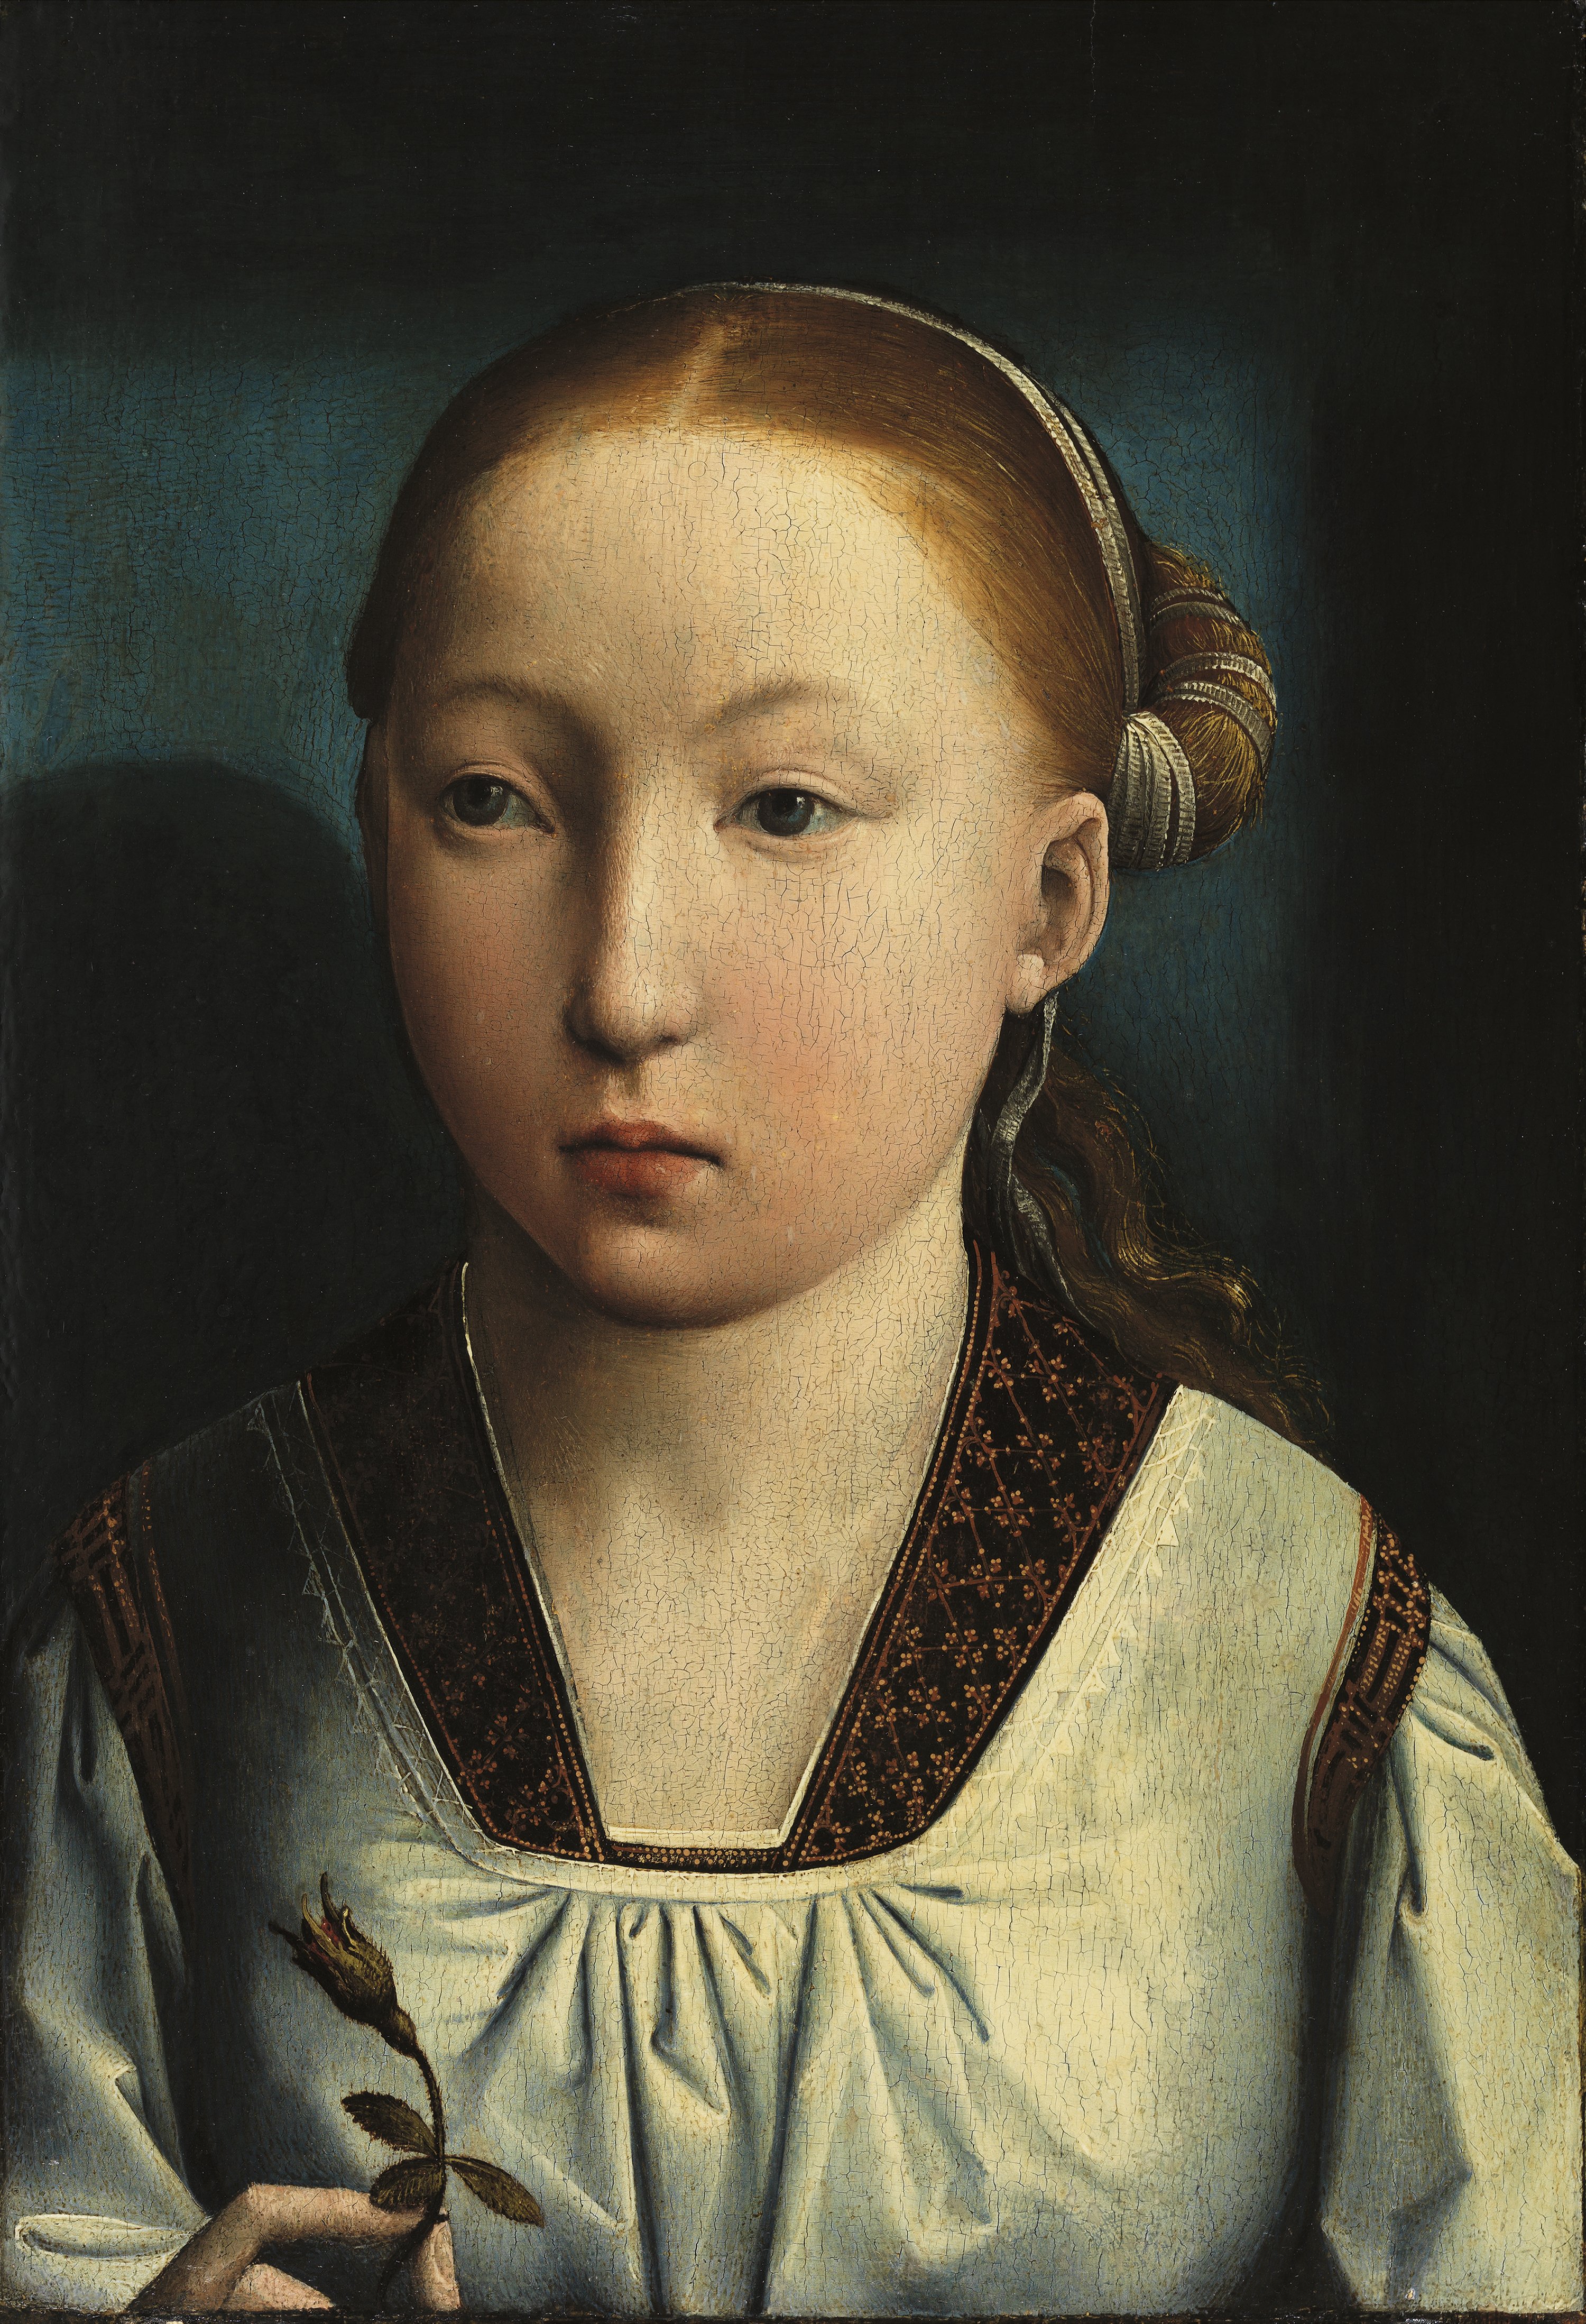 Portrait of an Infanta Catherine of Aragon (?). Retrato de una Infanta Catalina de Aragón (?), c. 1496